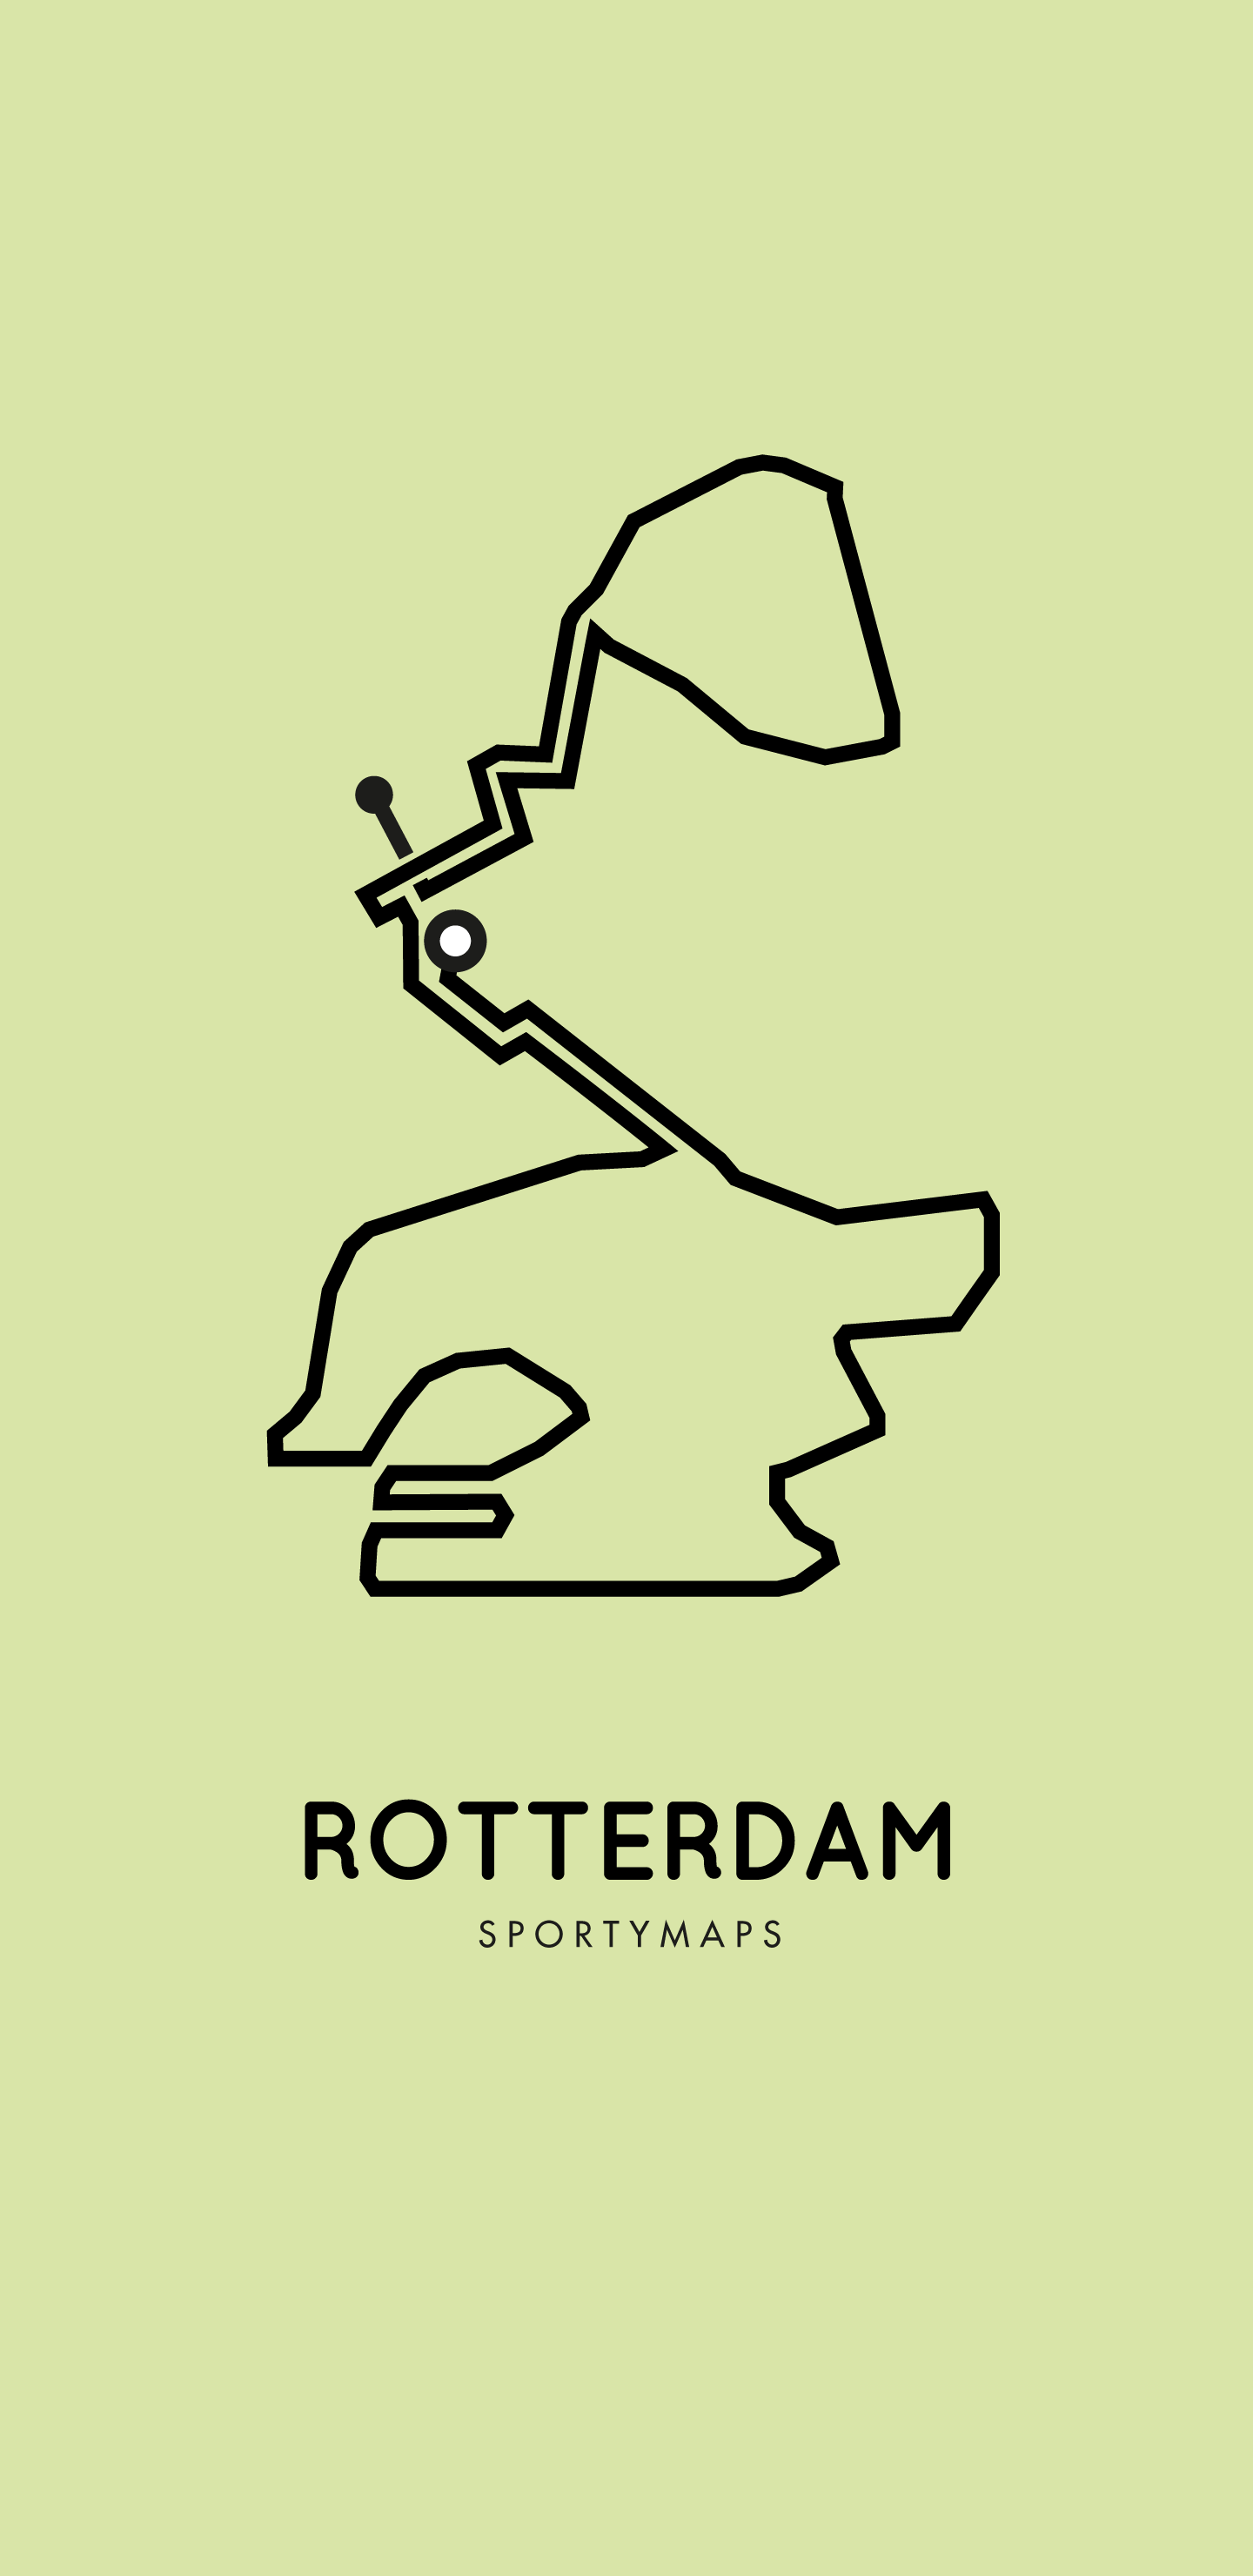 Sportymaps-Rotterdam-marathon-green